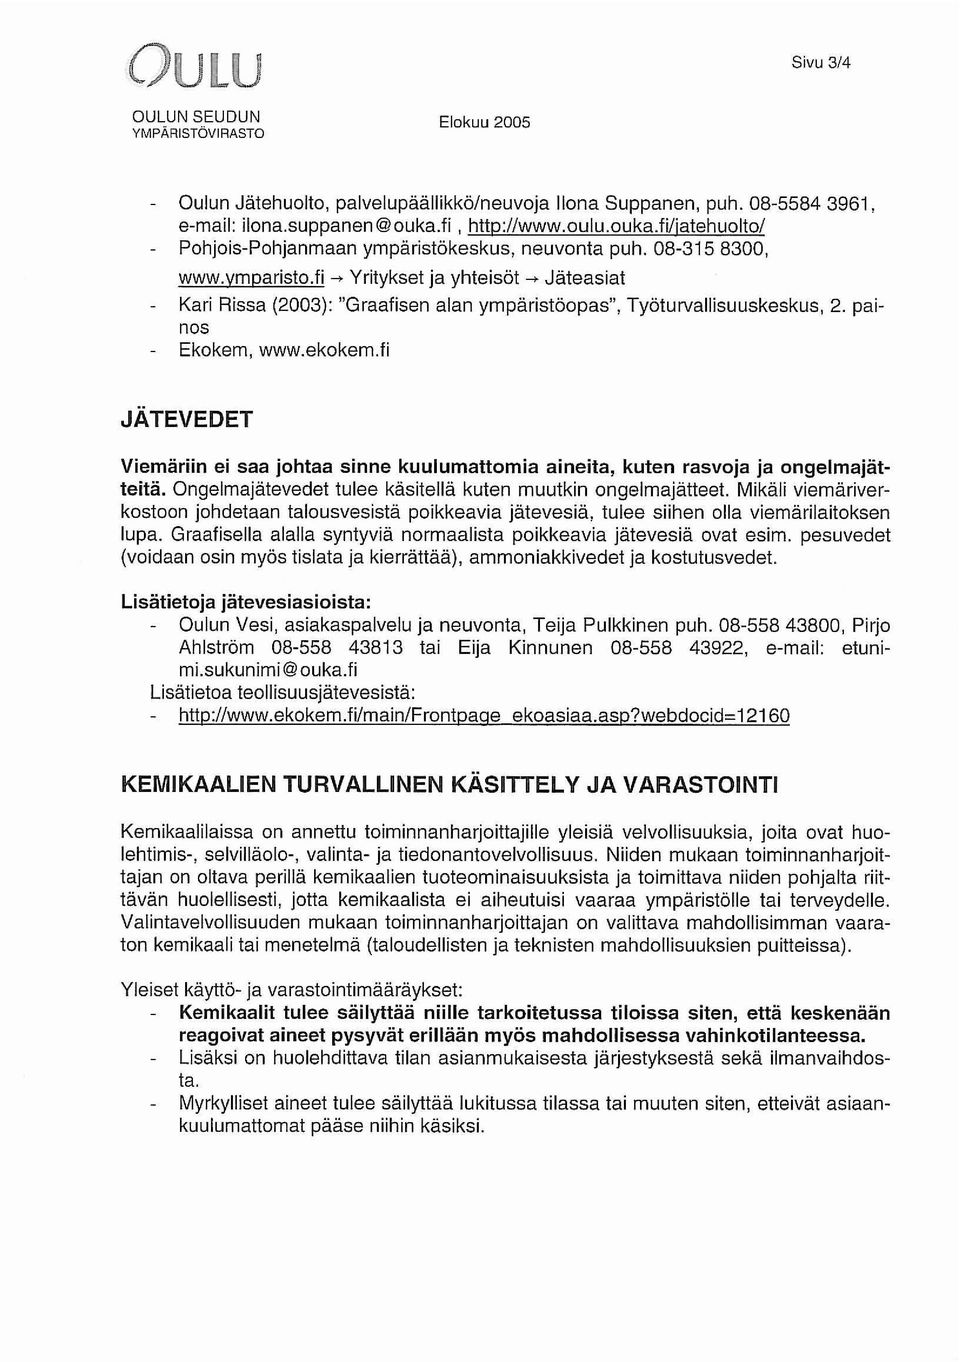 fi --+ Yritykset ja yhteisöt --+ Jäteasiat Kari Rissa (2003): "Graafisen alan ympäristöopas", Työturvallisuuskeskus, 2. painos Ekokem, www.ekokem.